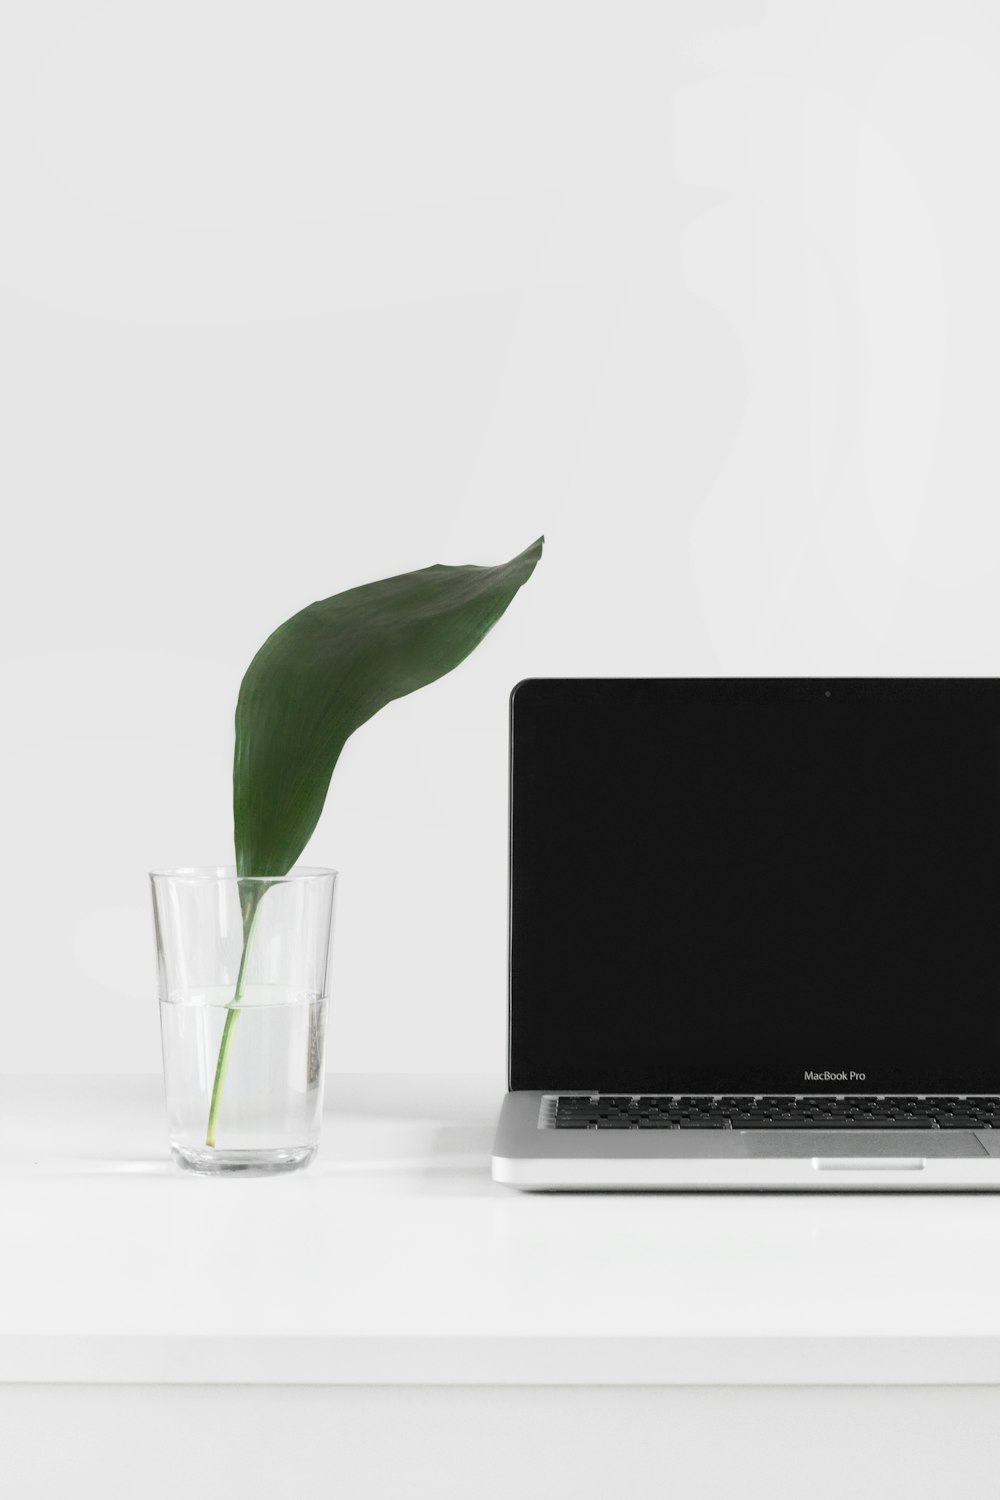 MacBook Pro junto a una planta en un jarrón